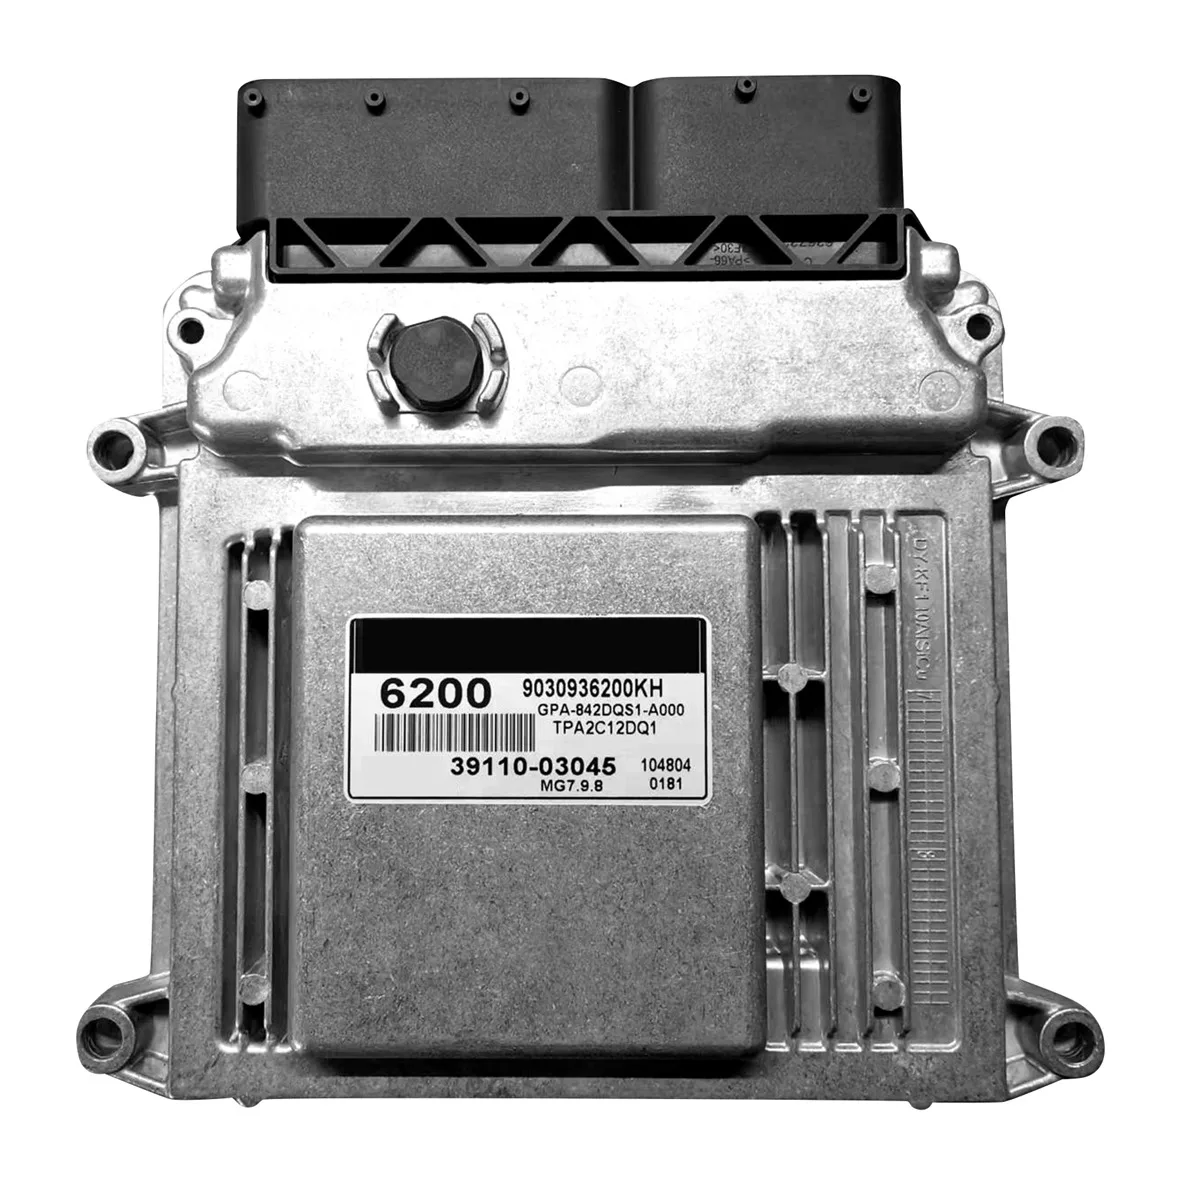 

Новая компьютерная плата двигателя 39110-03045 MG7.9.8, модуль контроллера ЭБУ для электронного блока управления Hyundai 3911003045